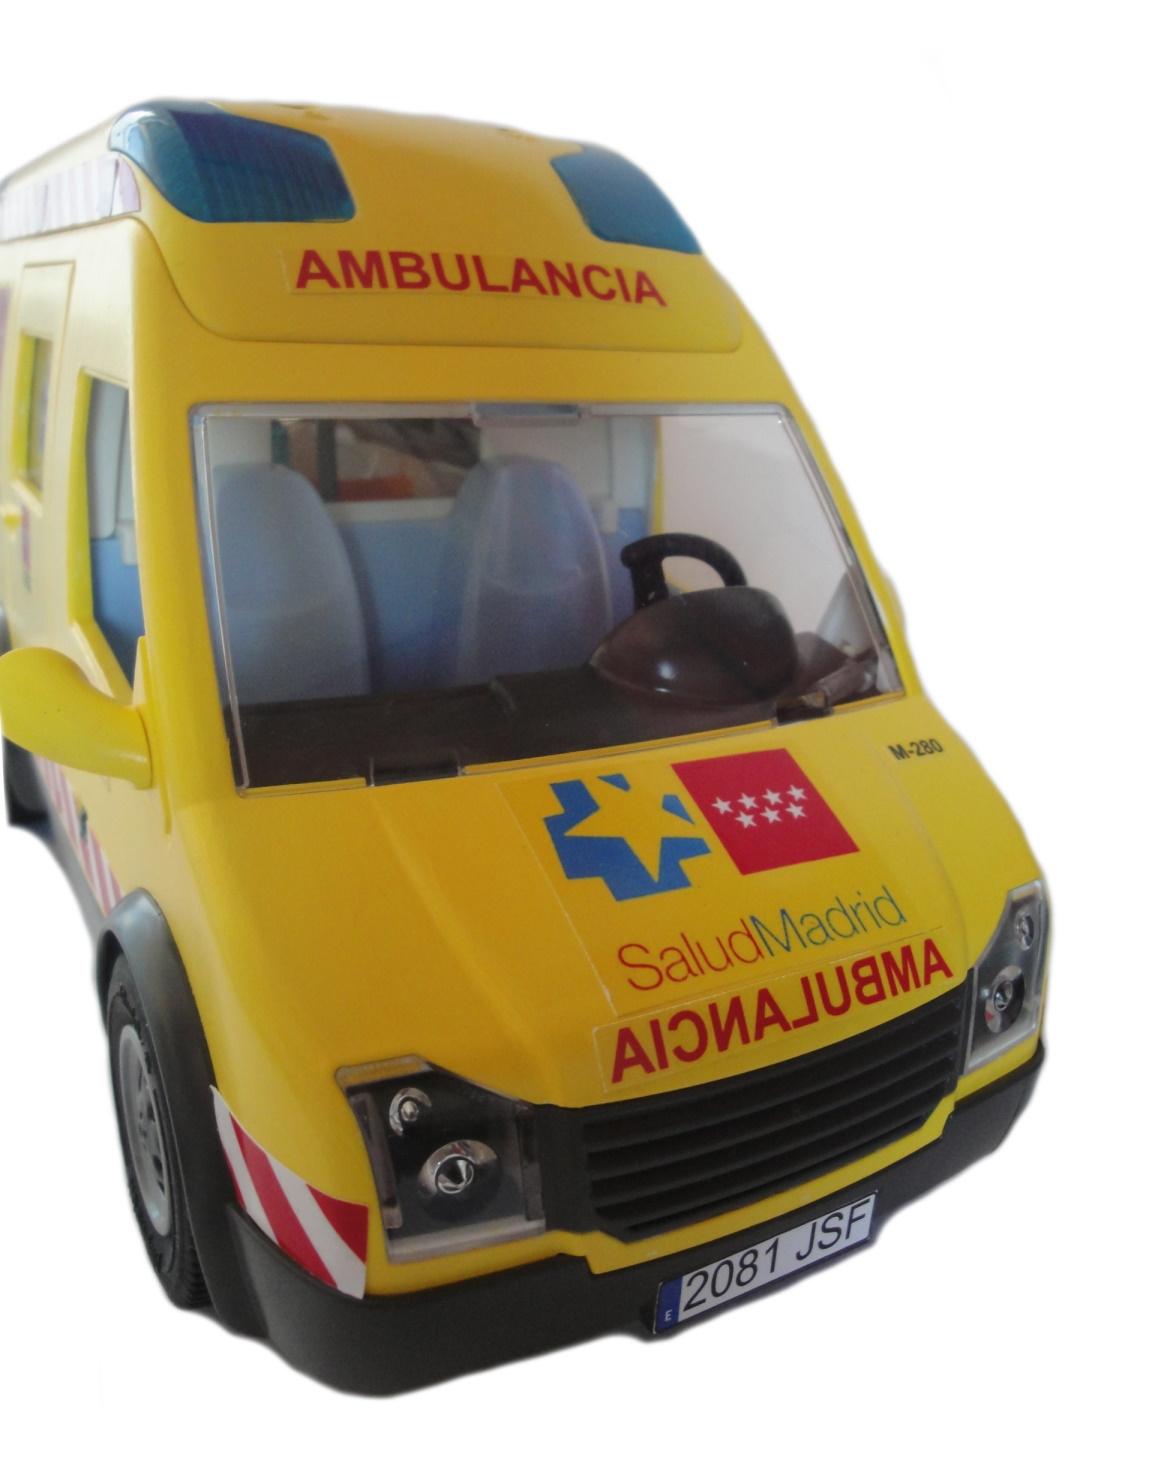 Ambulancia Playmobil personalizada con los distintivos del SAMUR Servicio de Salud de la Comunidad de Madrid